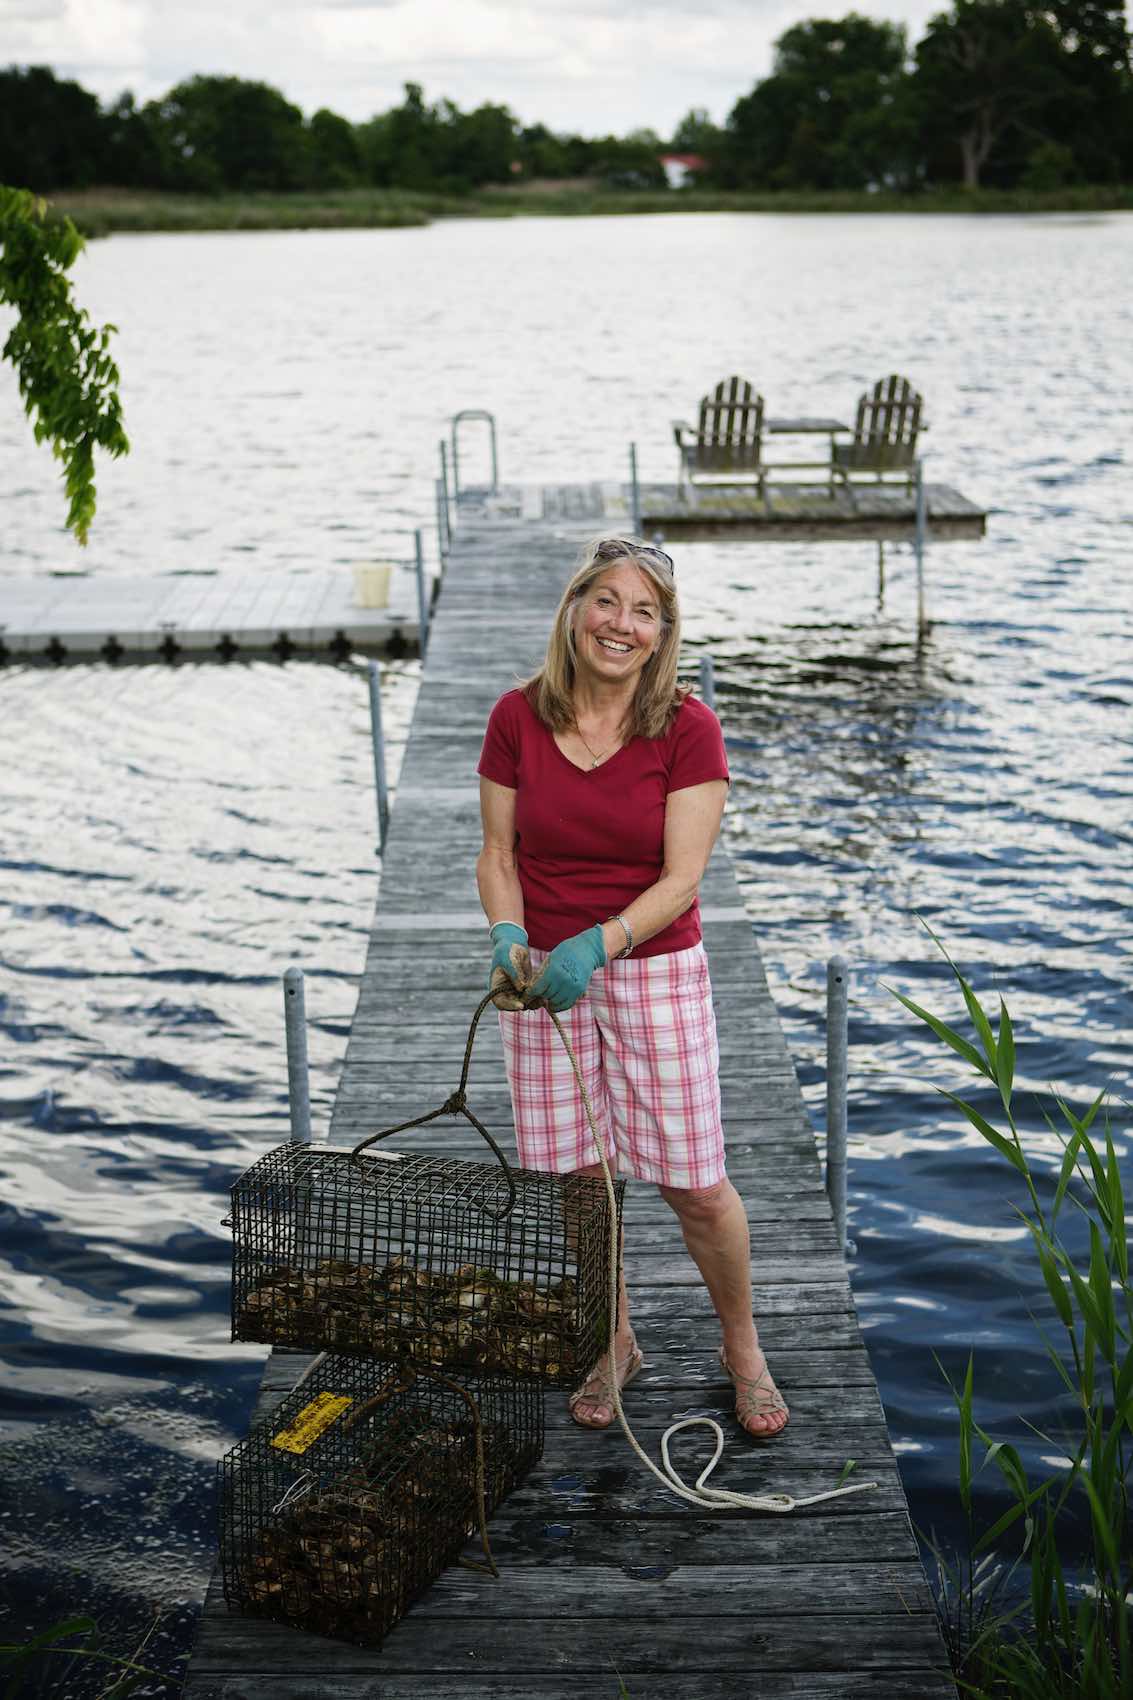 Jody Horton Photography - Fisherwoman hauling catch from a lake. 